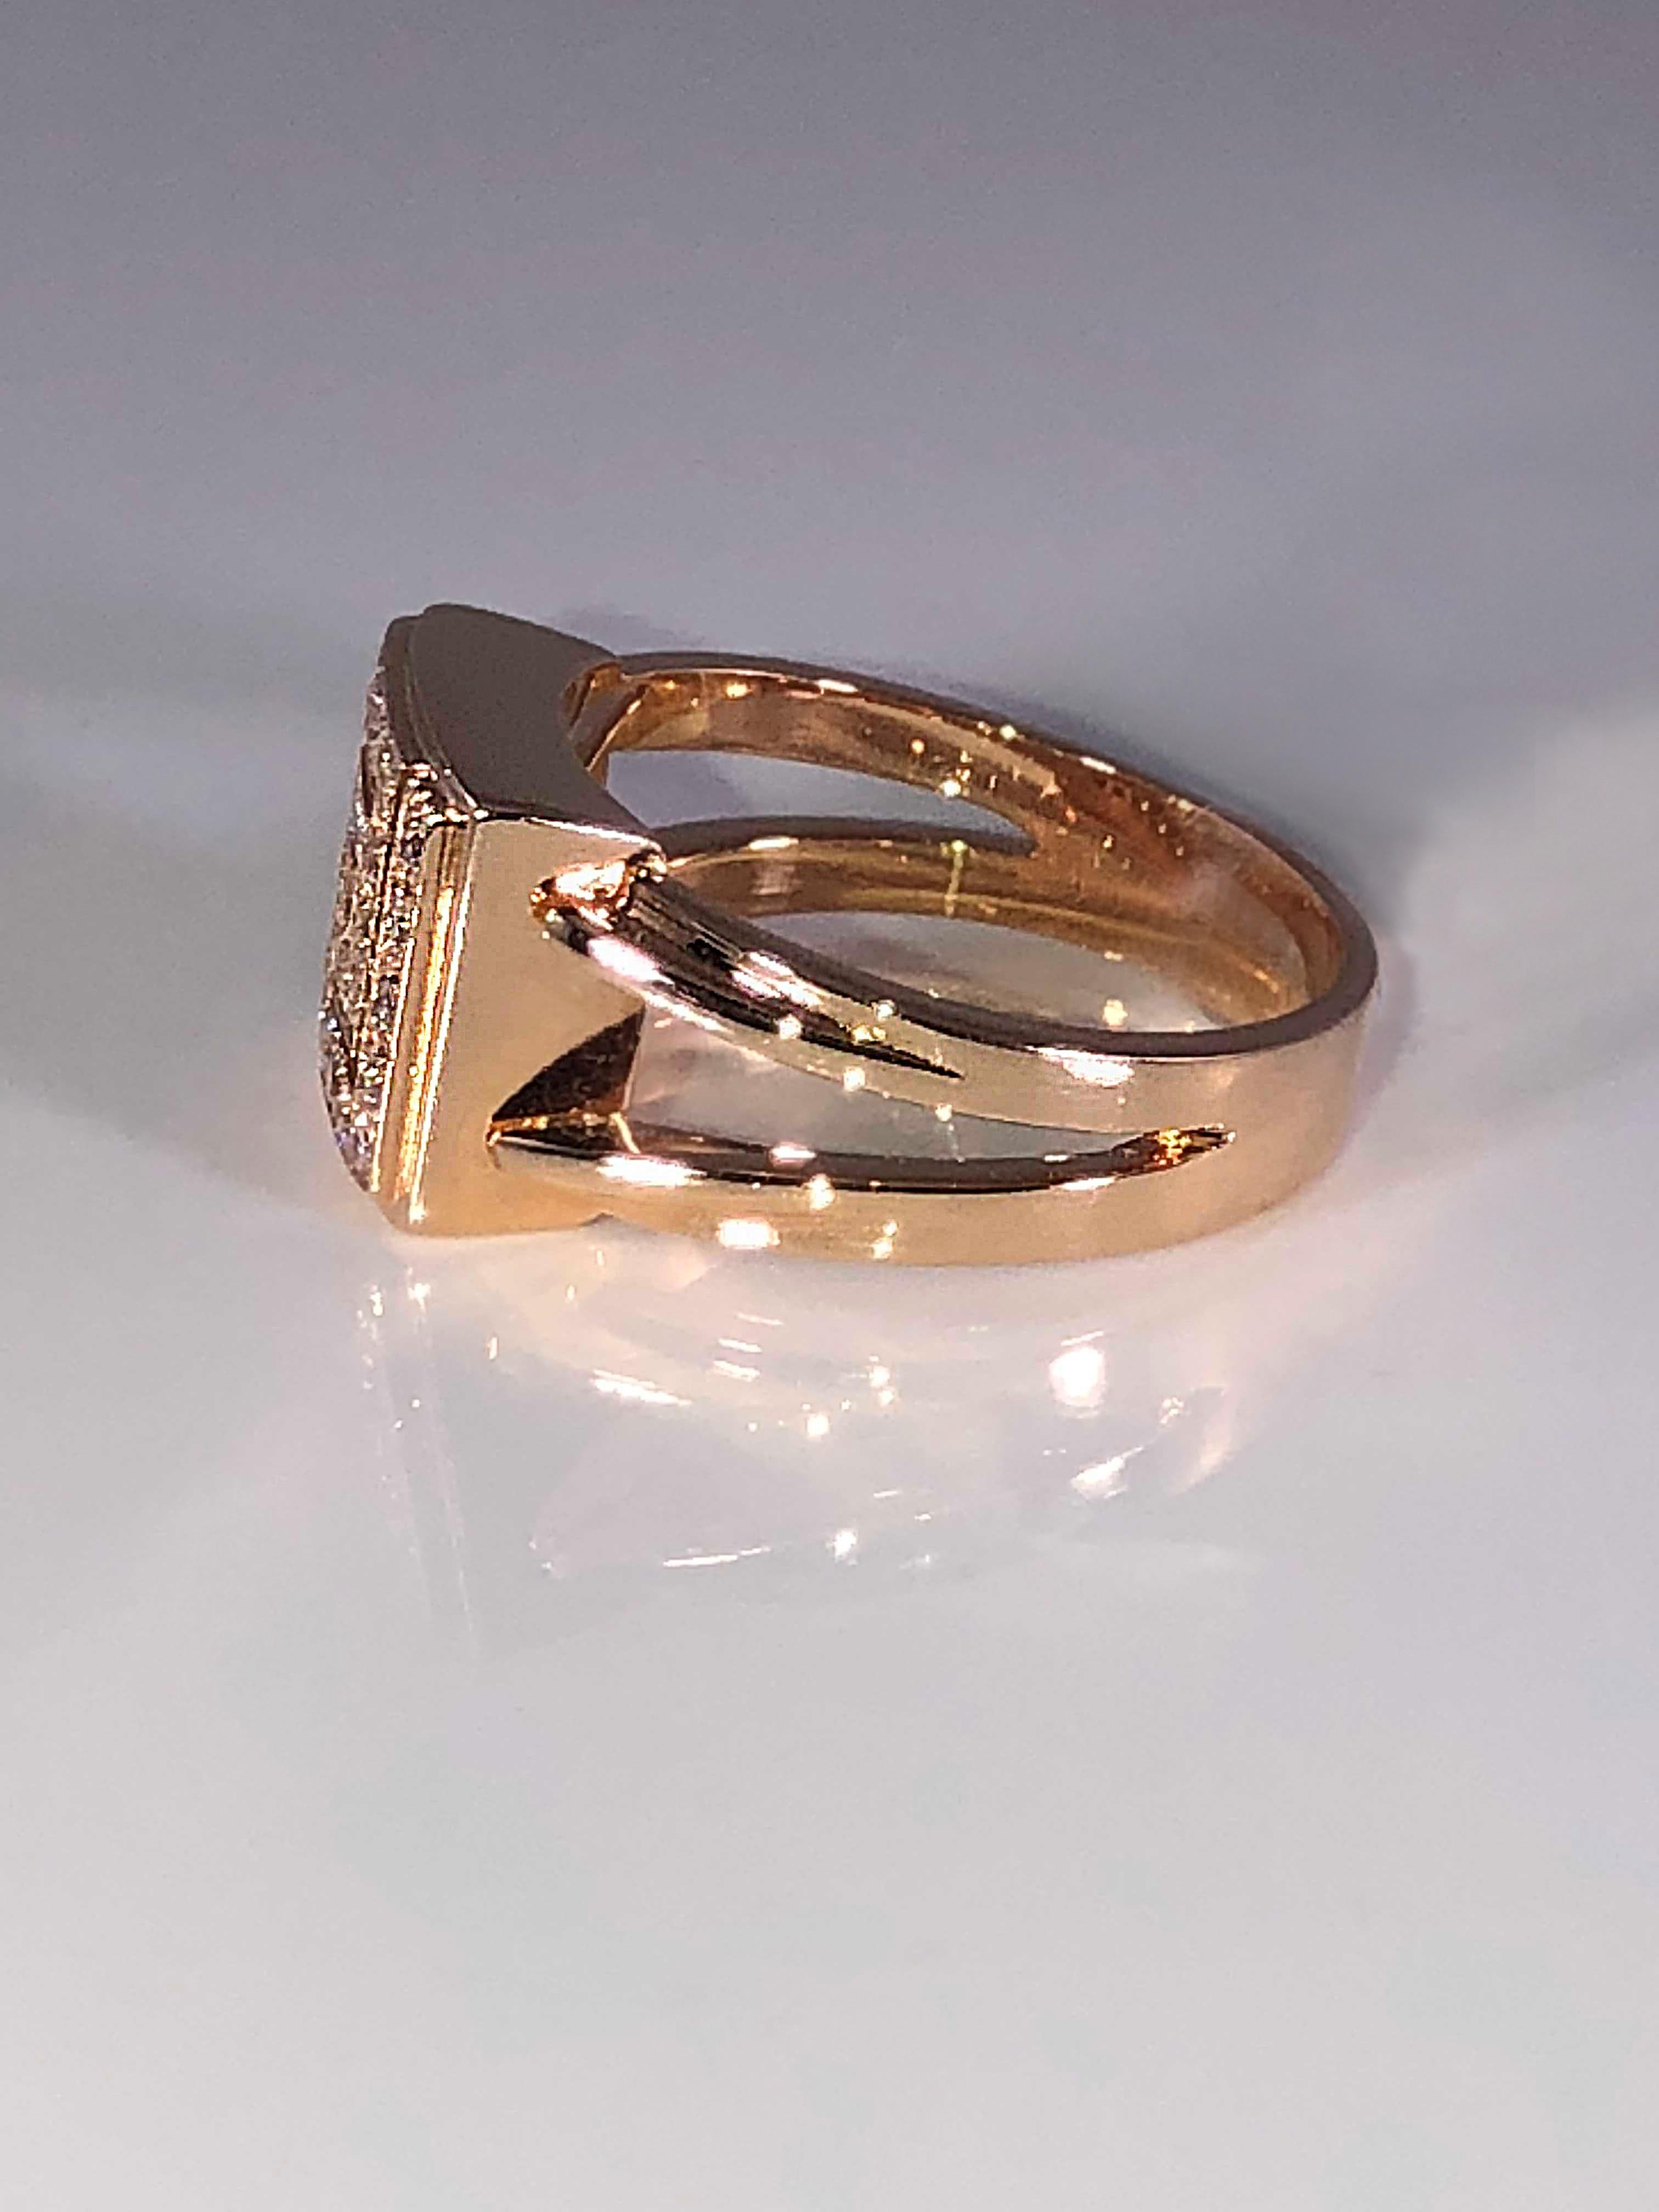 S. Georgios design Bague en or rose 18 carats entièrement réalisée à la main avec le motif de la clé grecque qui symbolise l'éternité. Il est connu comme le symbole de la longue vie et est le premier dessin géométrique trouvé près de 2000 ans avant